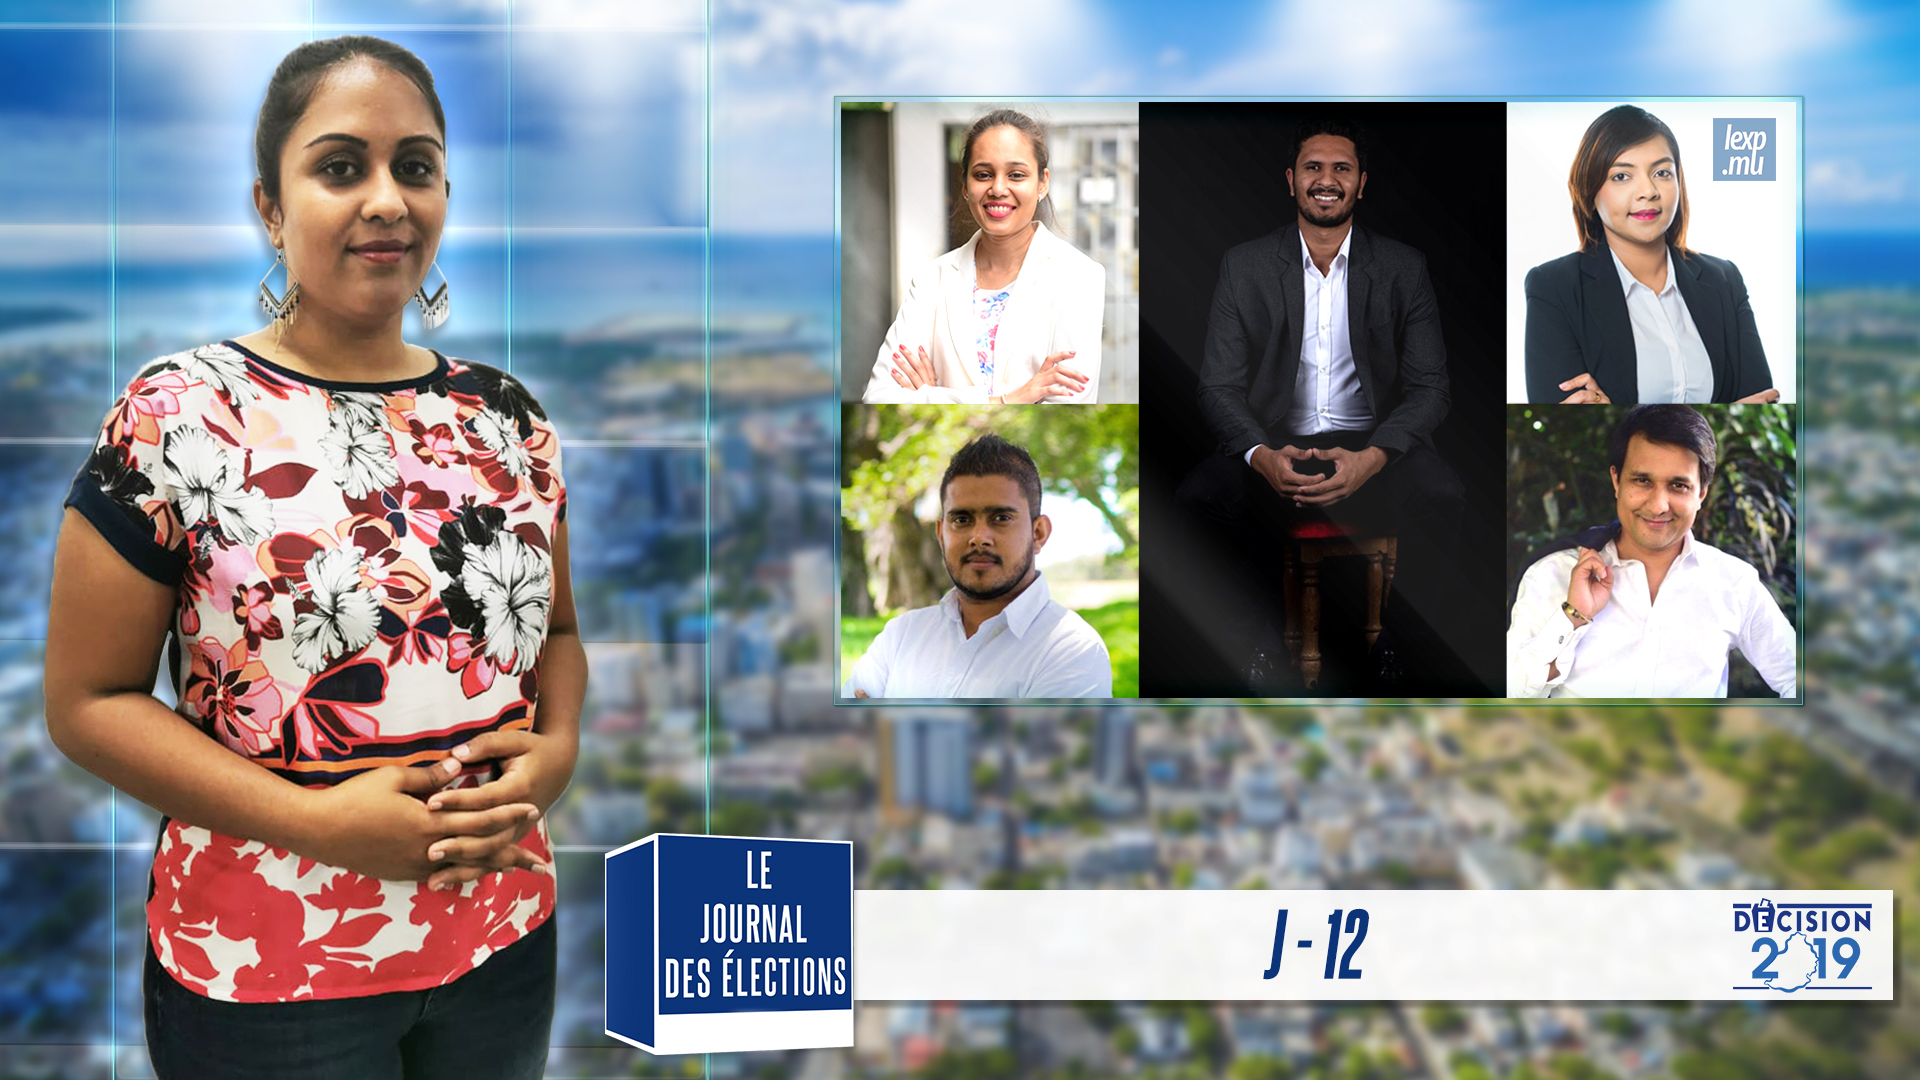 Journal des Elections | J-12 : Baptême en politique : le pari fou des jeunes candidats 